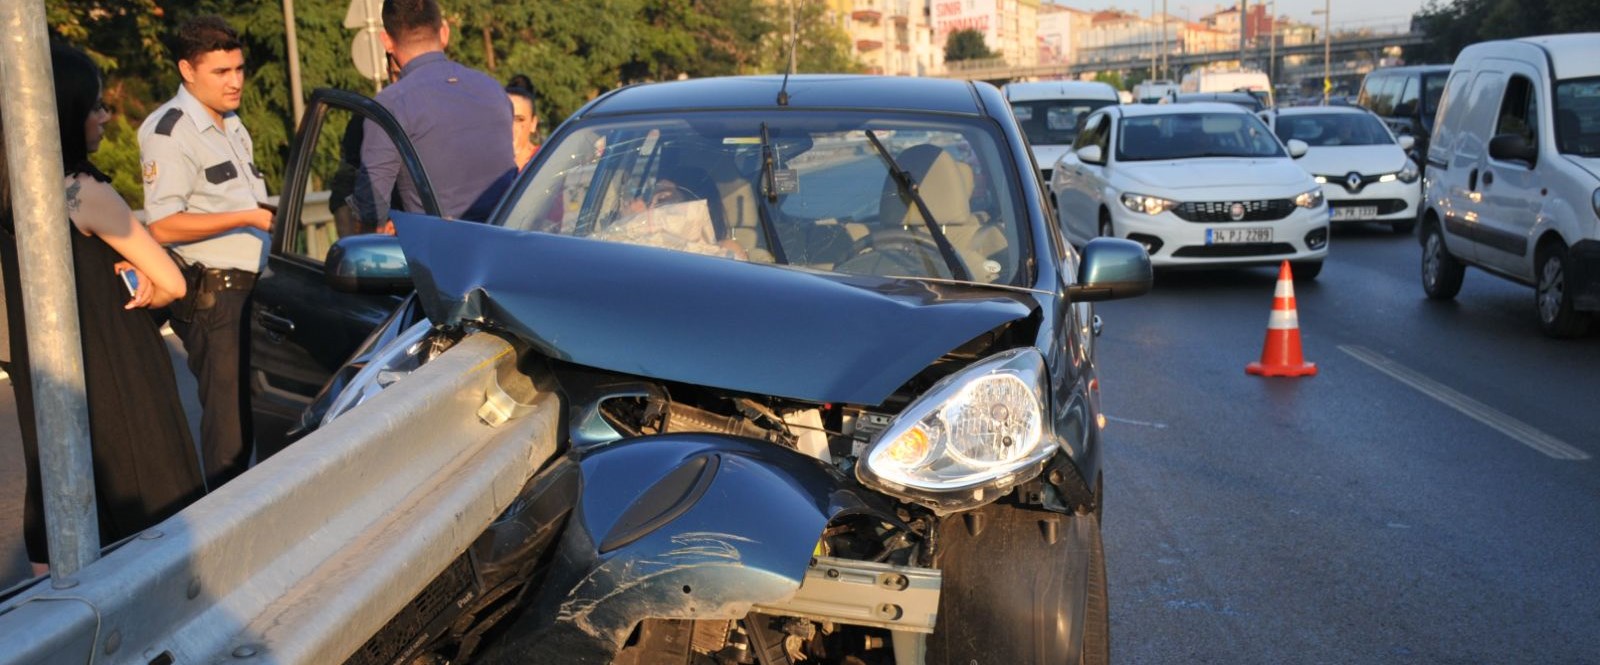 Bakırköy'de feci kaza: Bariyer otomobile ok gibi saplandı